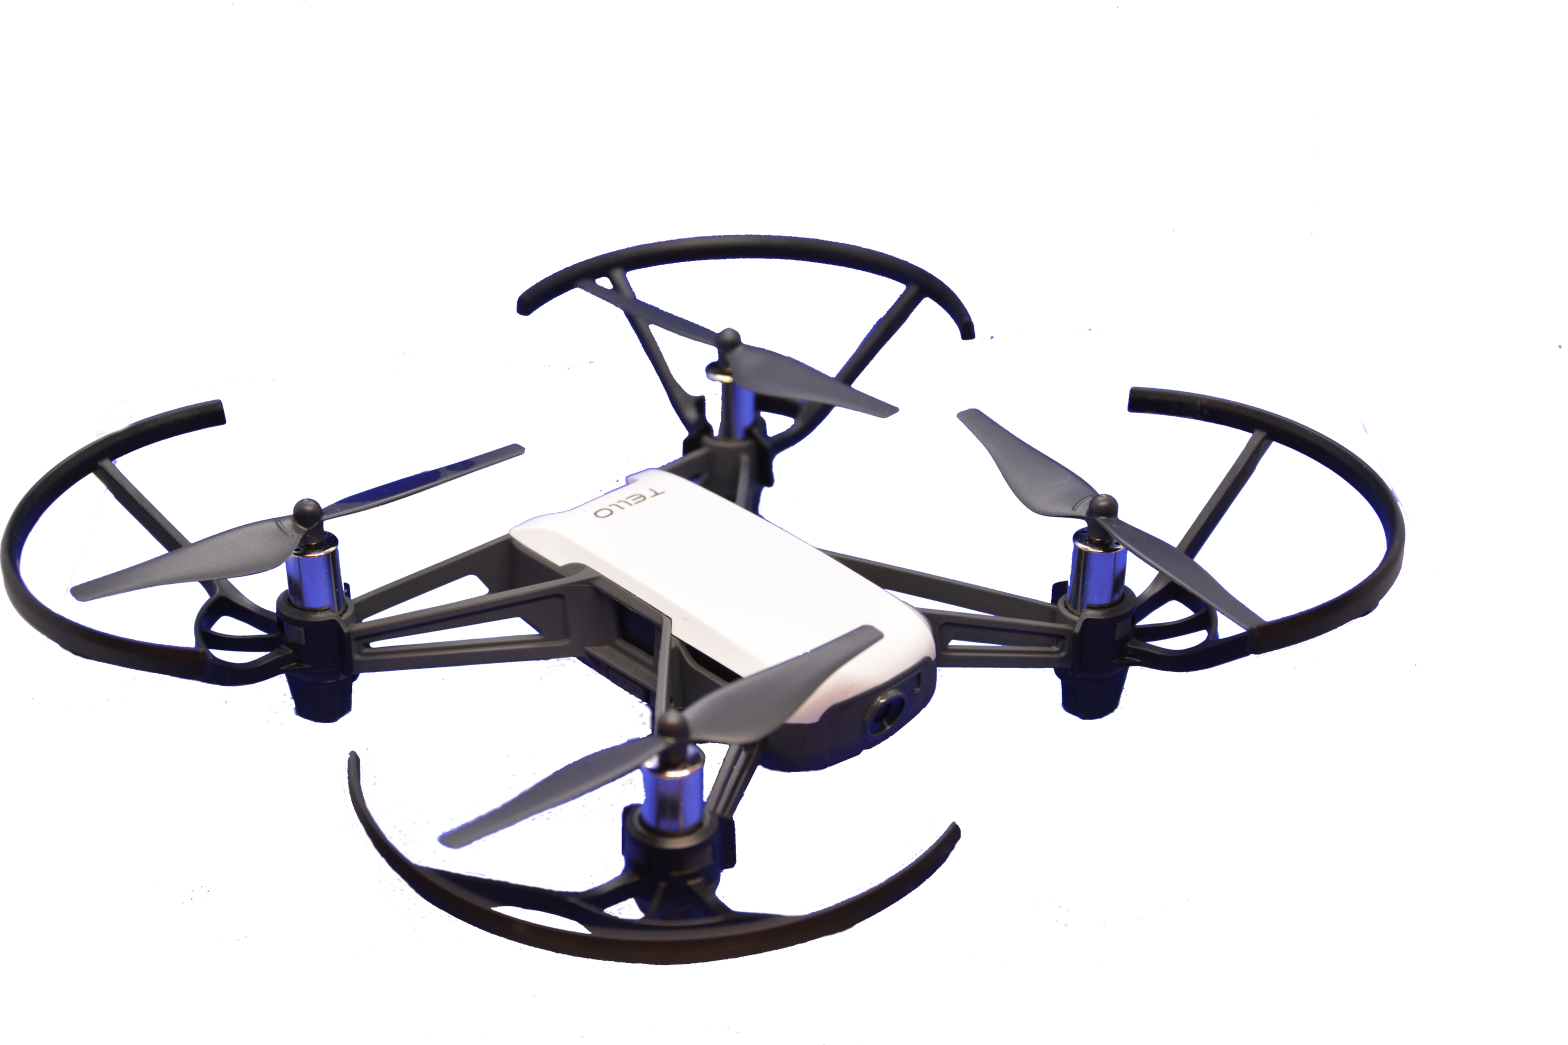 Trello drone